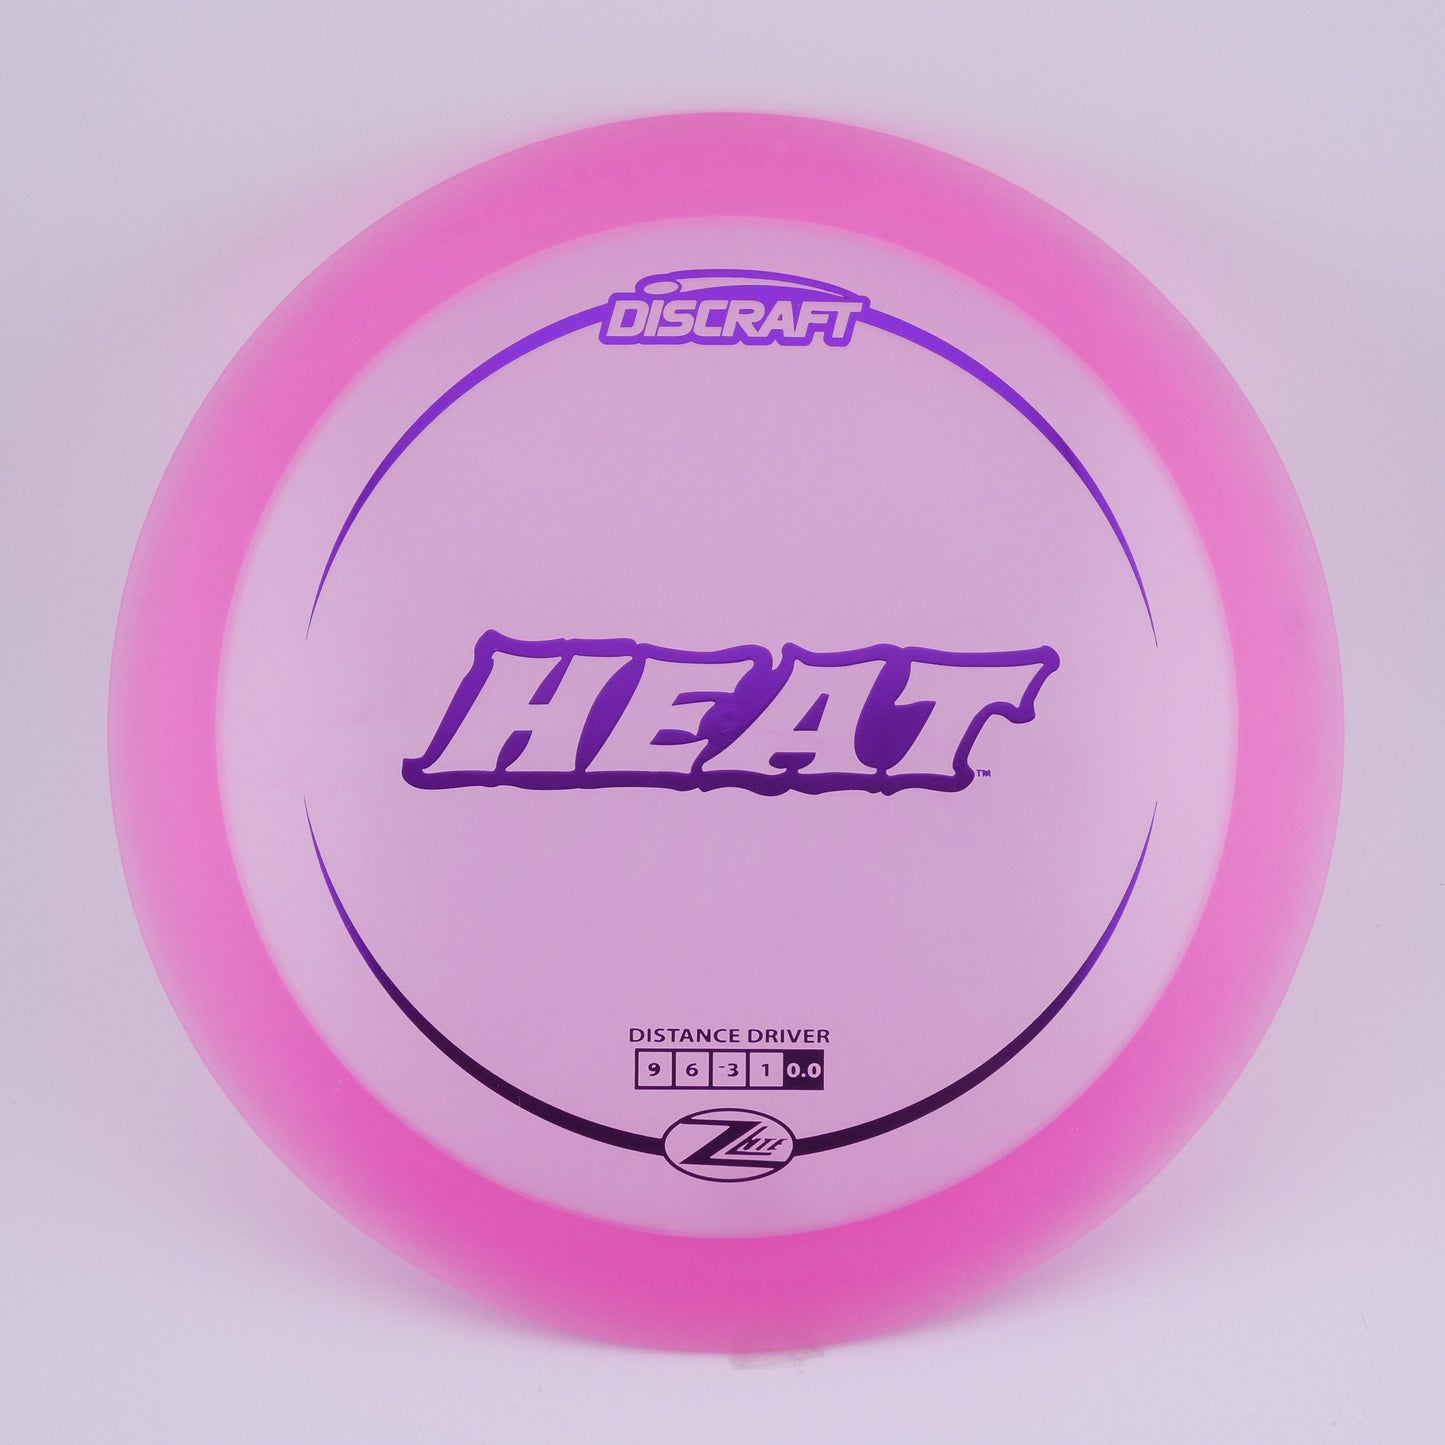 Z Lite Heat 151-159g